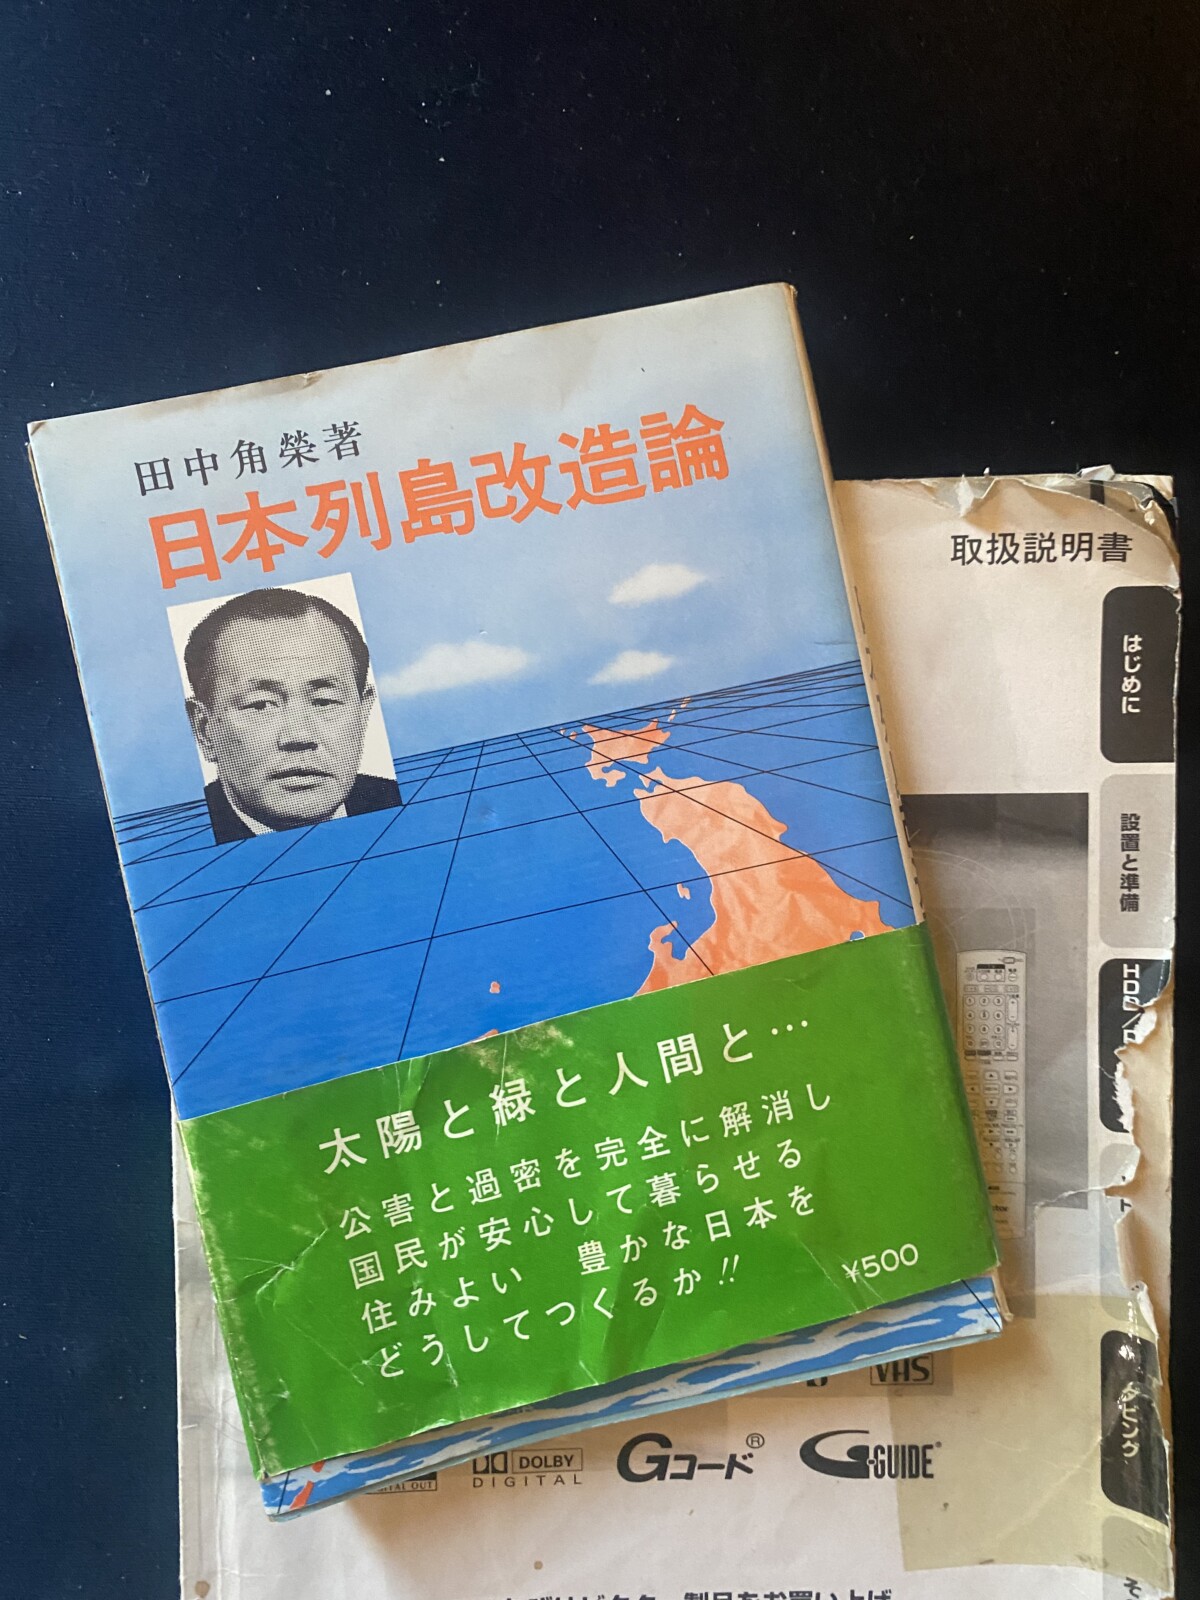 日本列島改造論